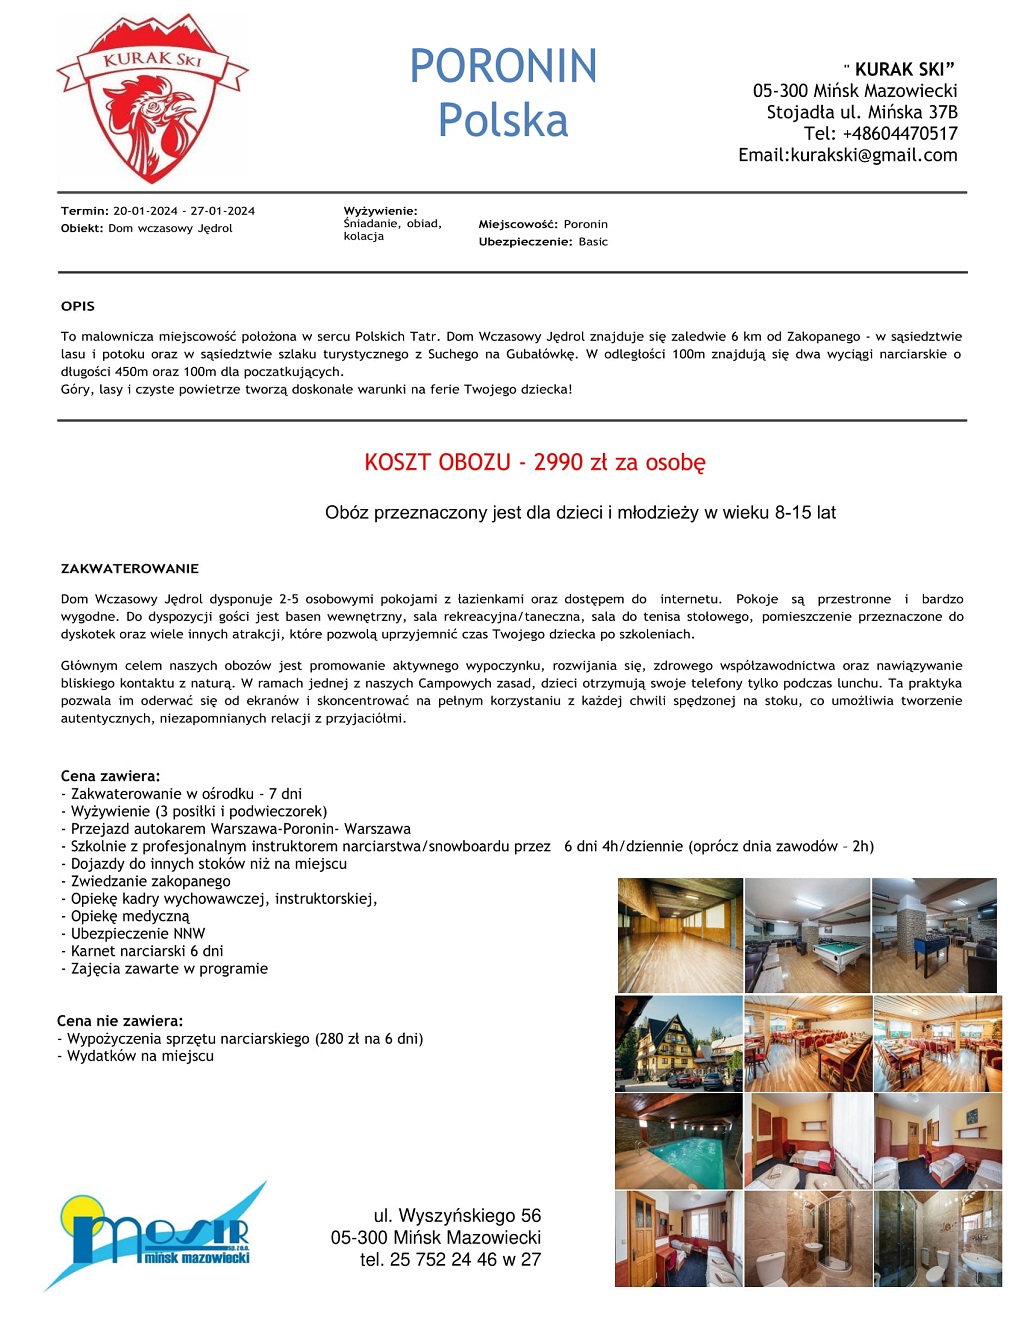 Wycieczka do Włoch 16-23.12.2023 Hotel Alpen Village -Via Gerus Livingo cena za osobę 770 euro